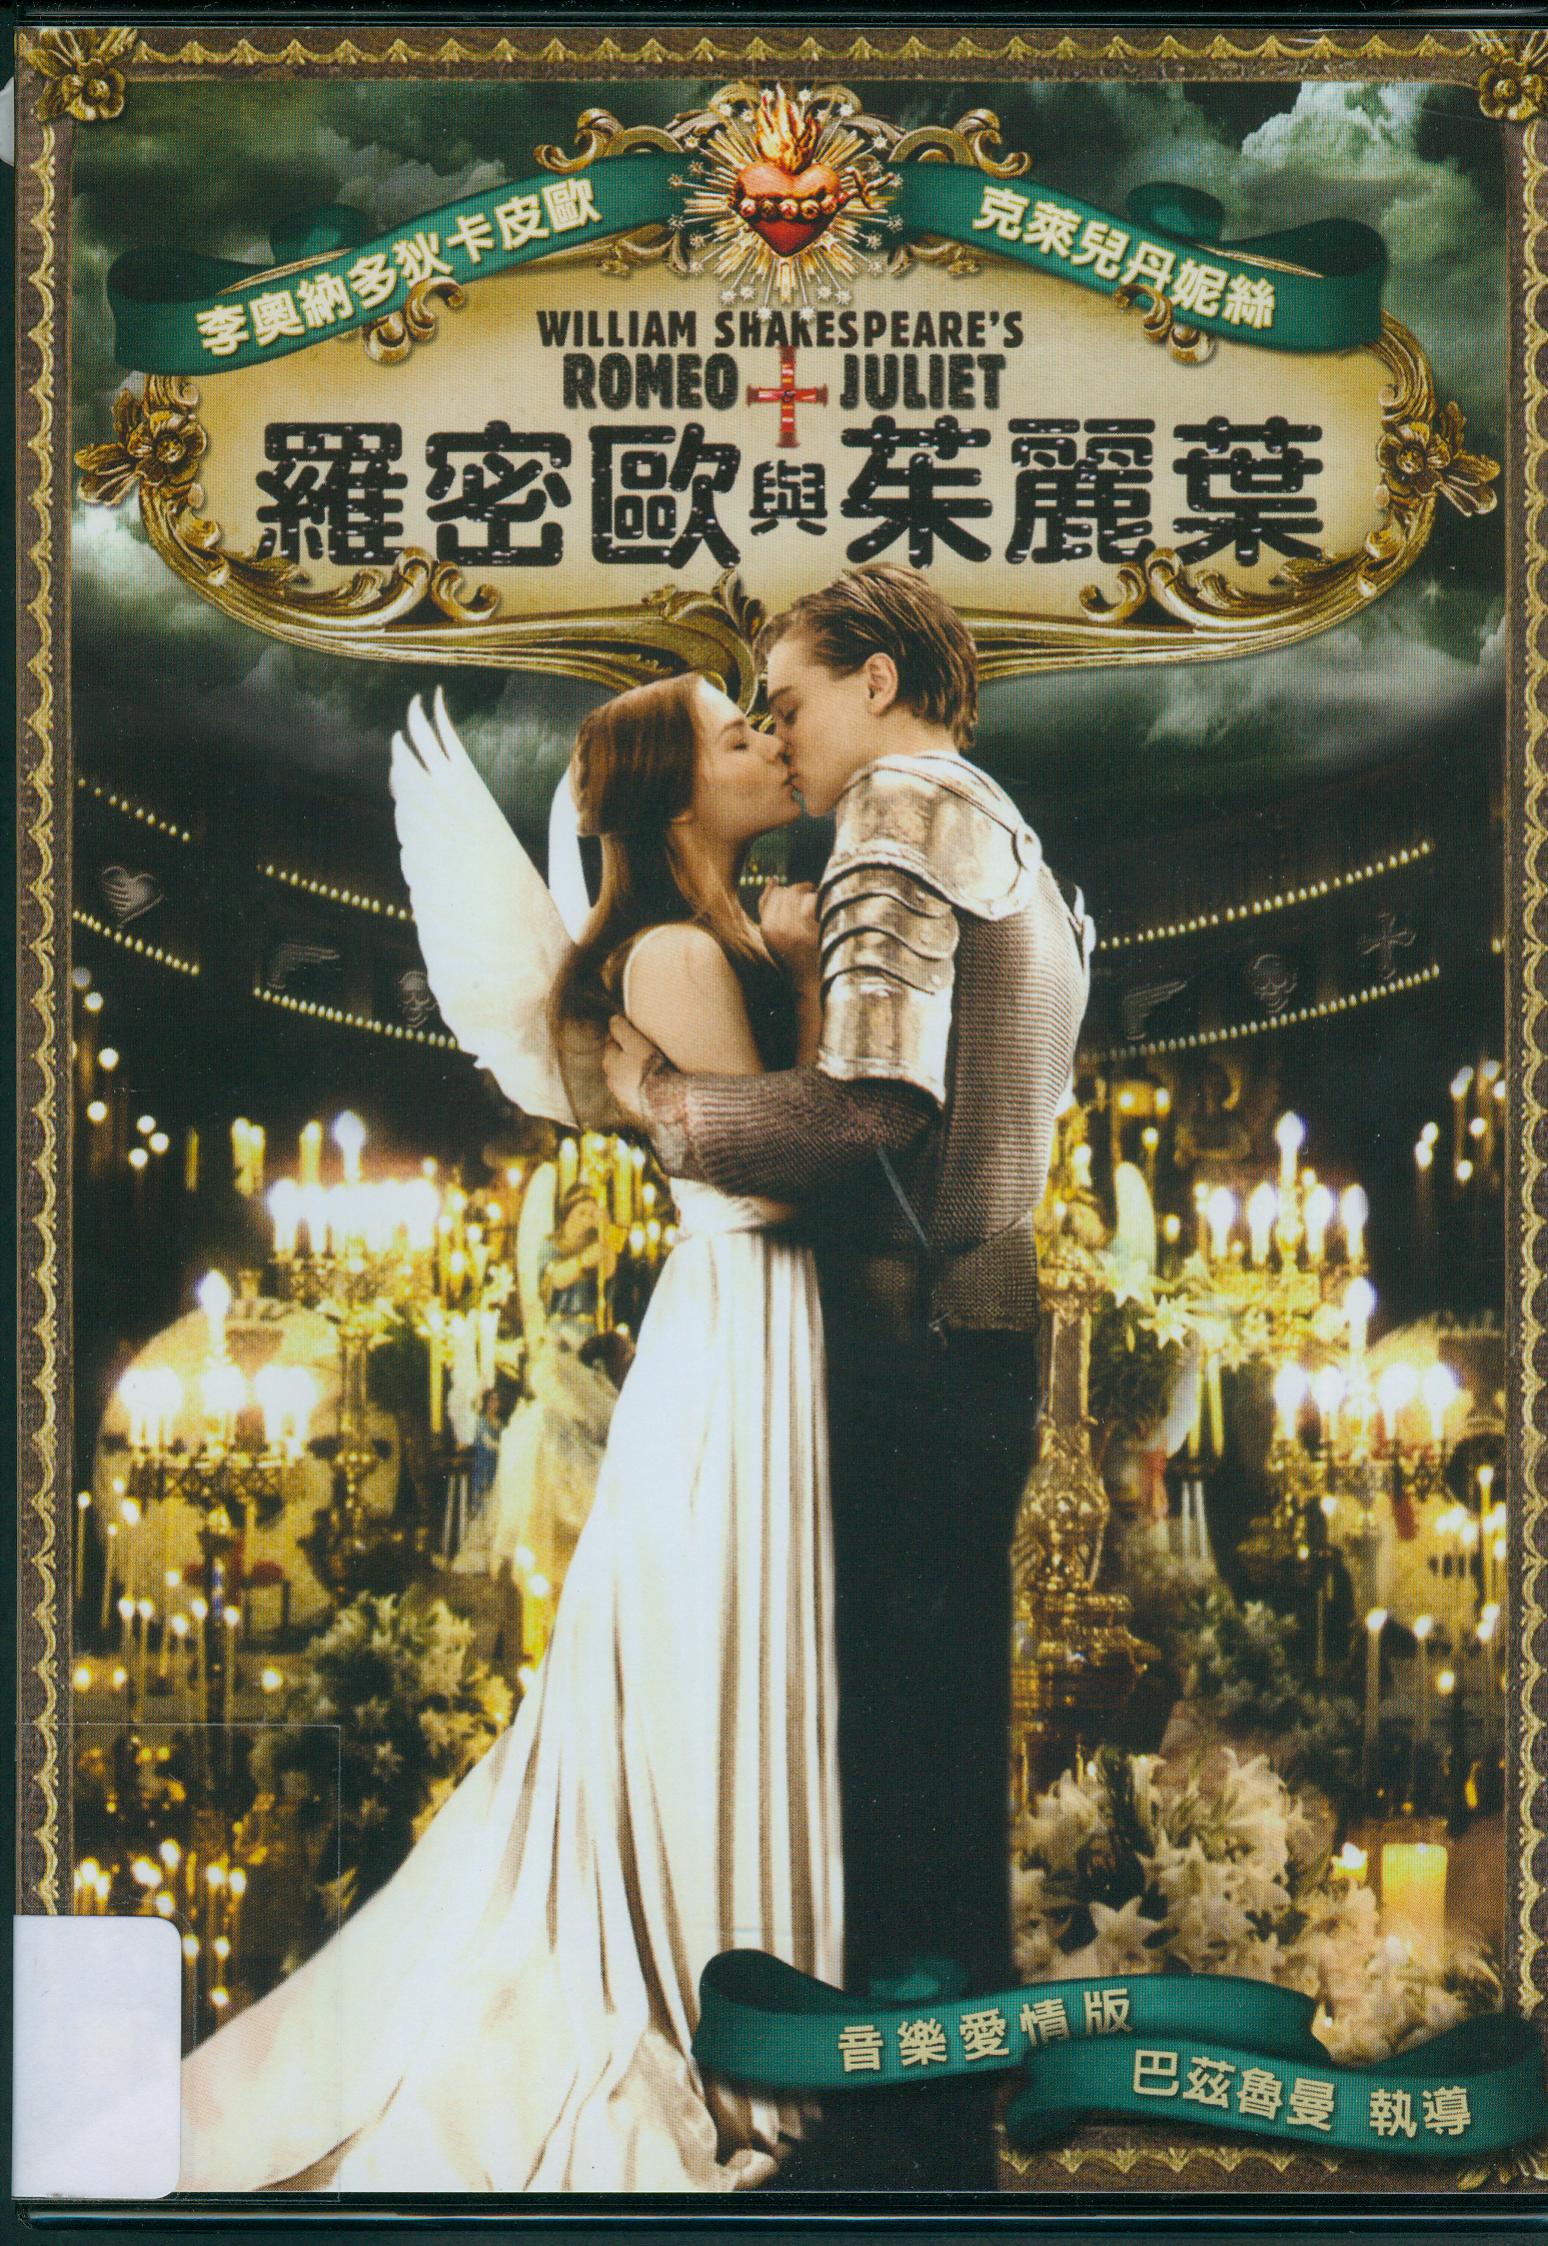 羅密歐與茱麗葉[輔導級:文學改編] : Romeo+Juliet